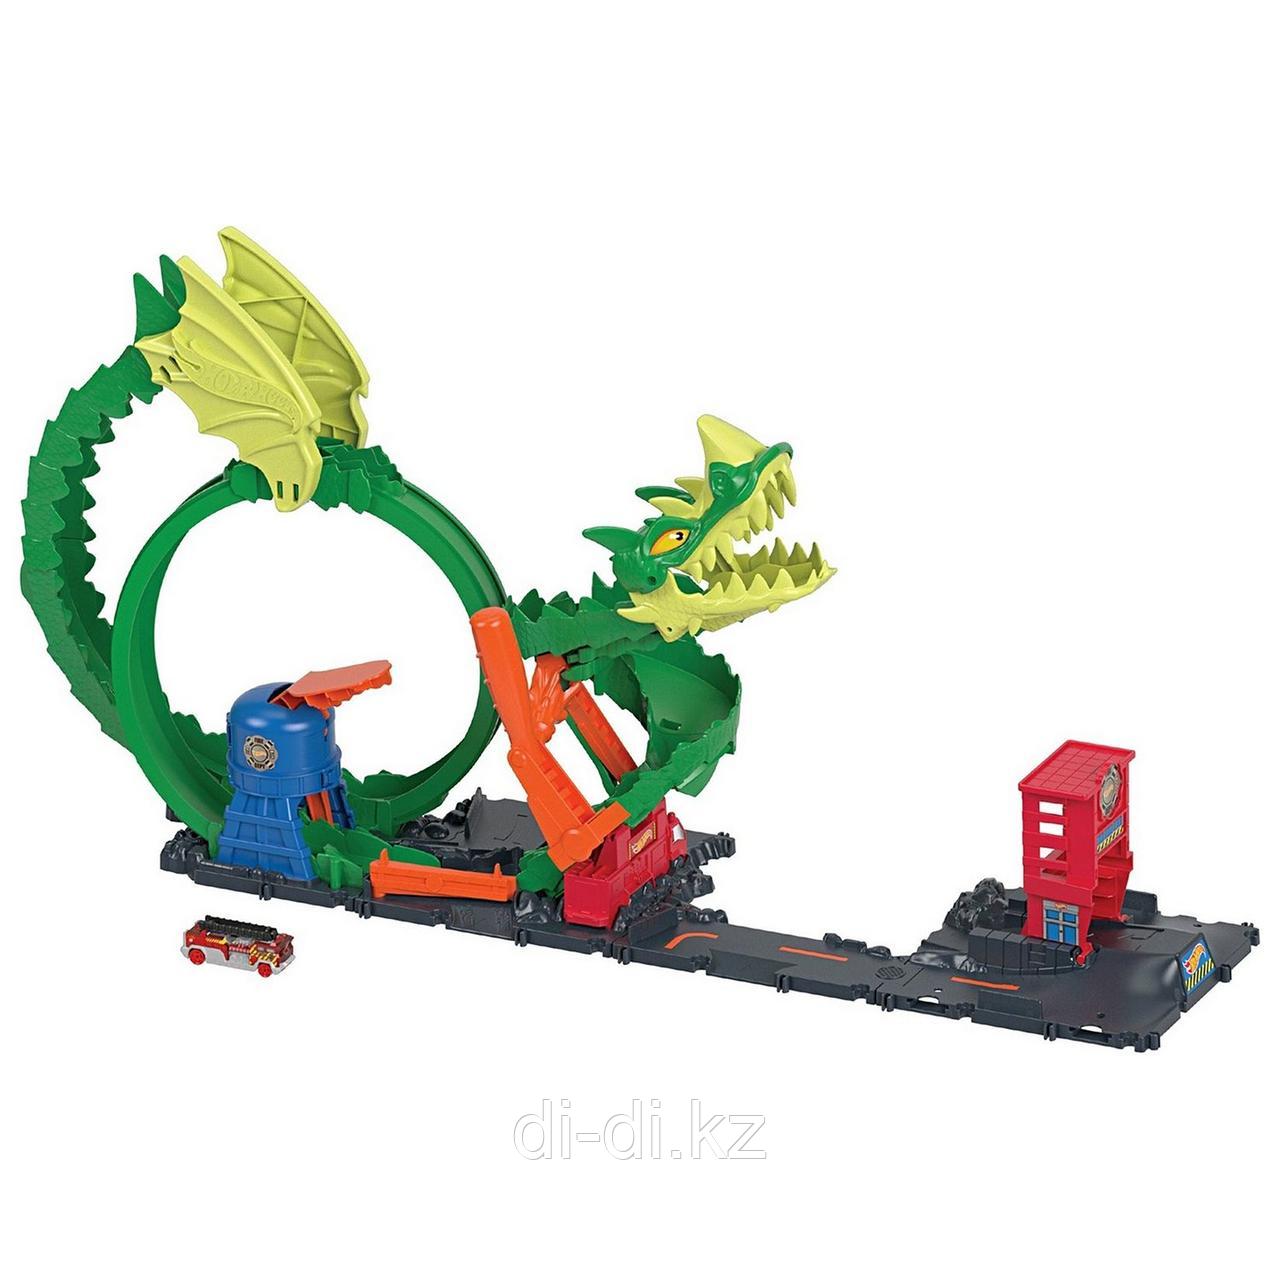 Mattel HW Трек "Огневой бой с драконом", HDP03